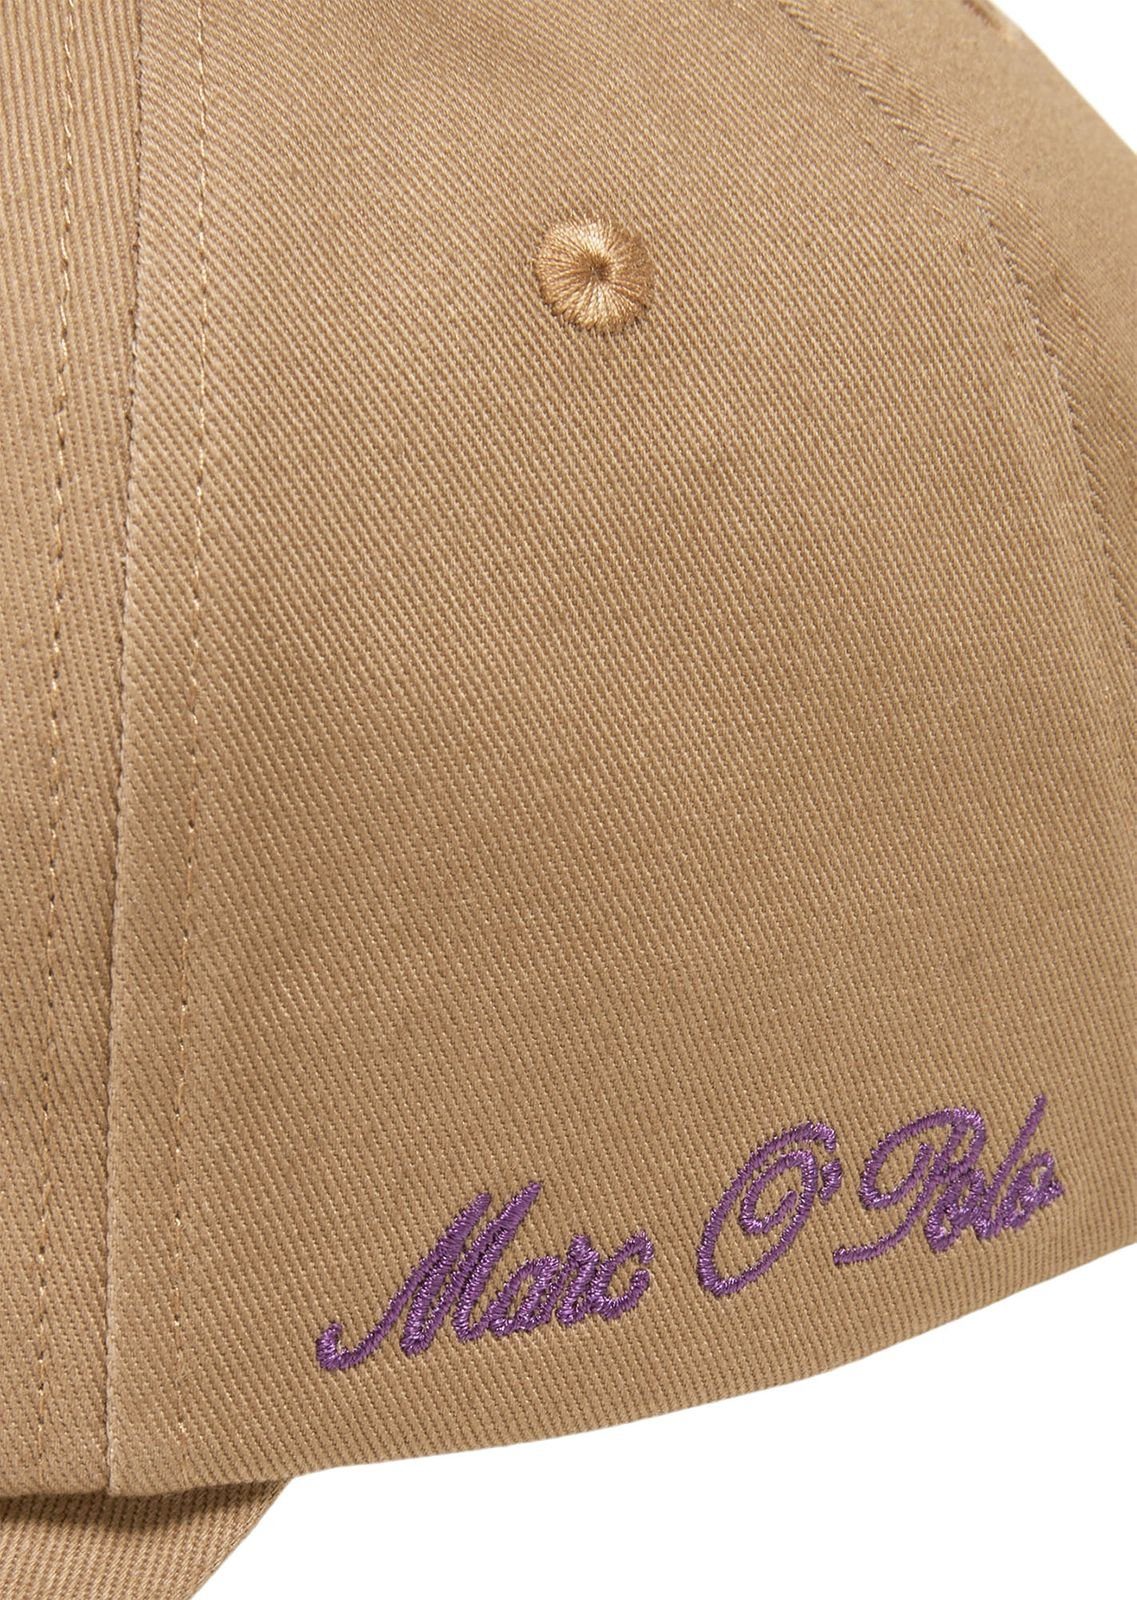 Marc O'Polo Baseball Brown Embroidery Casabella Cap